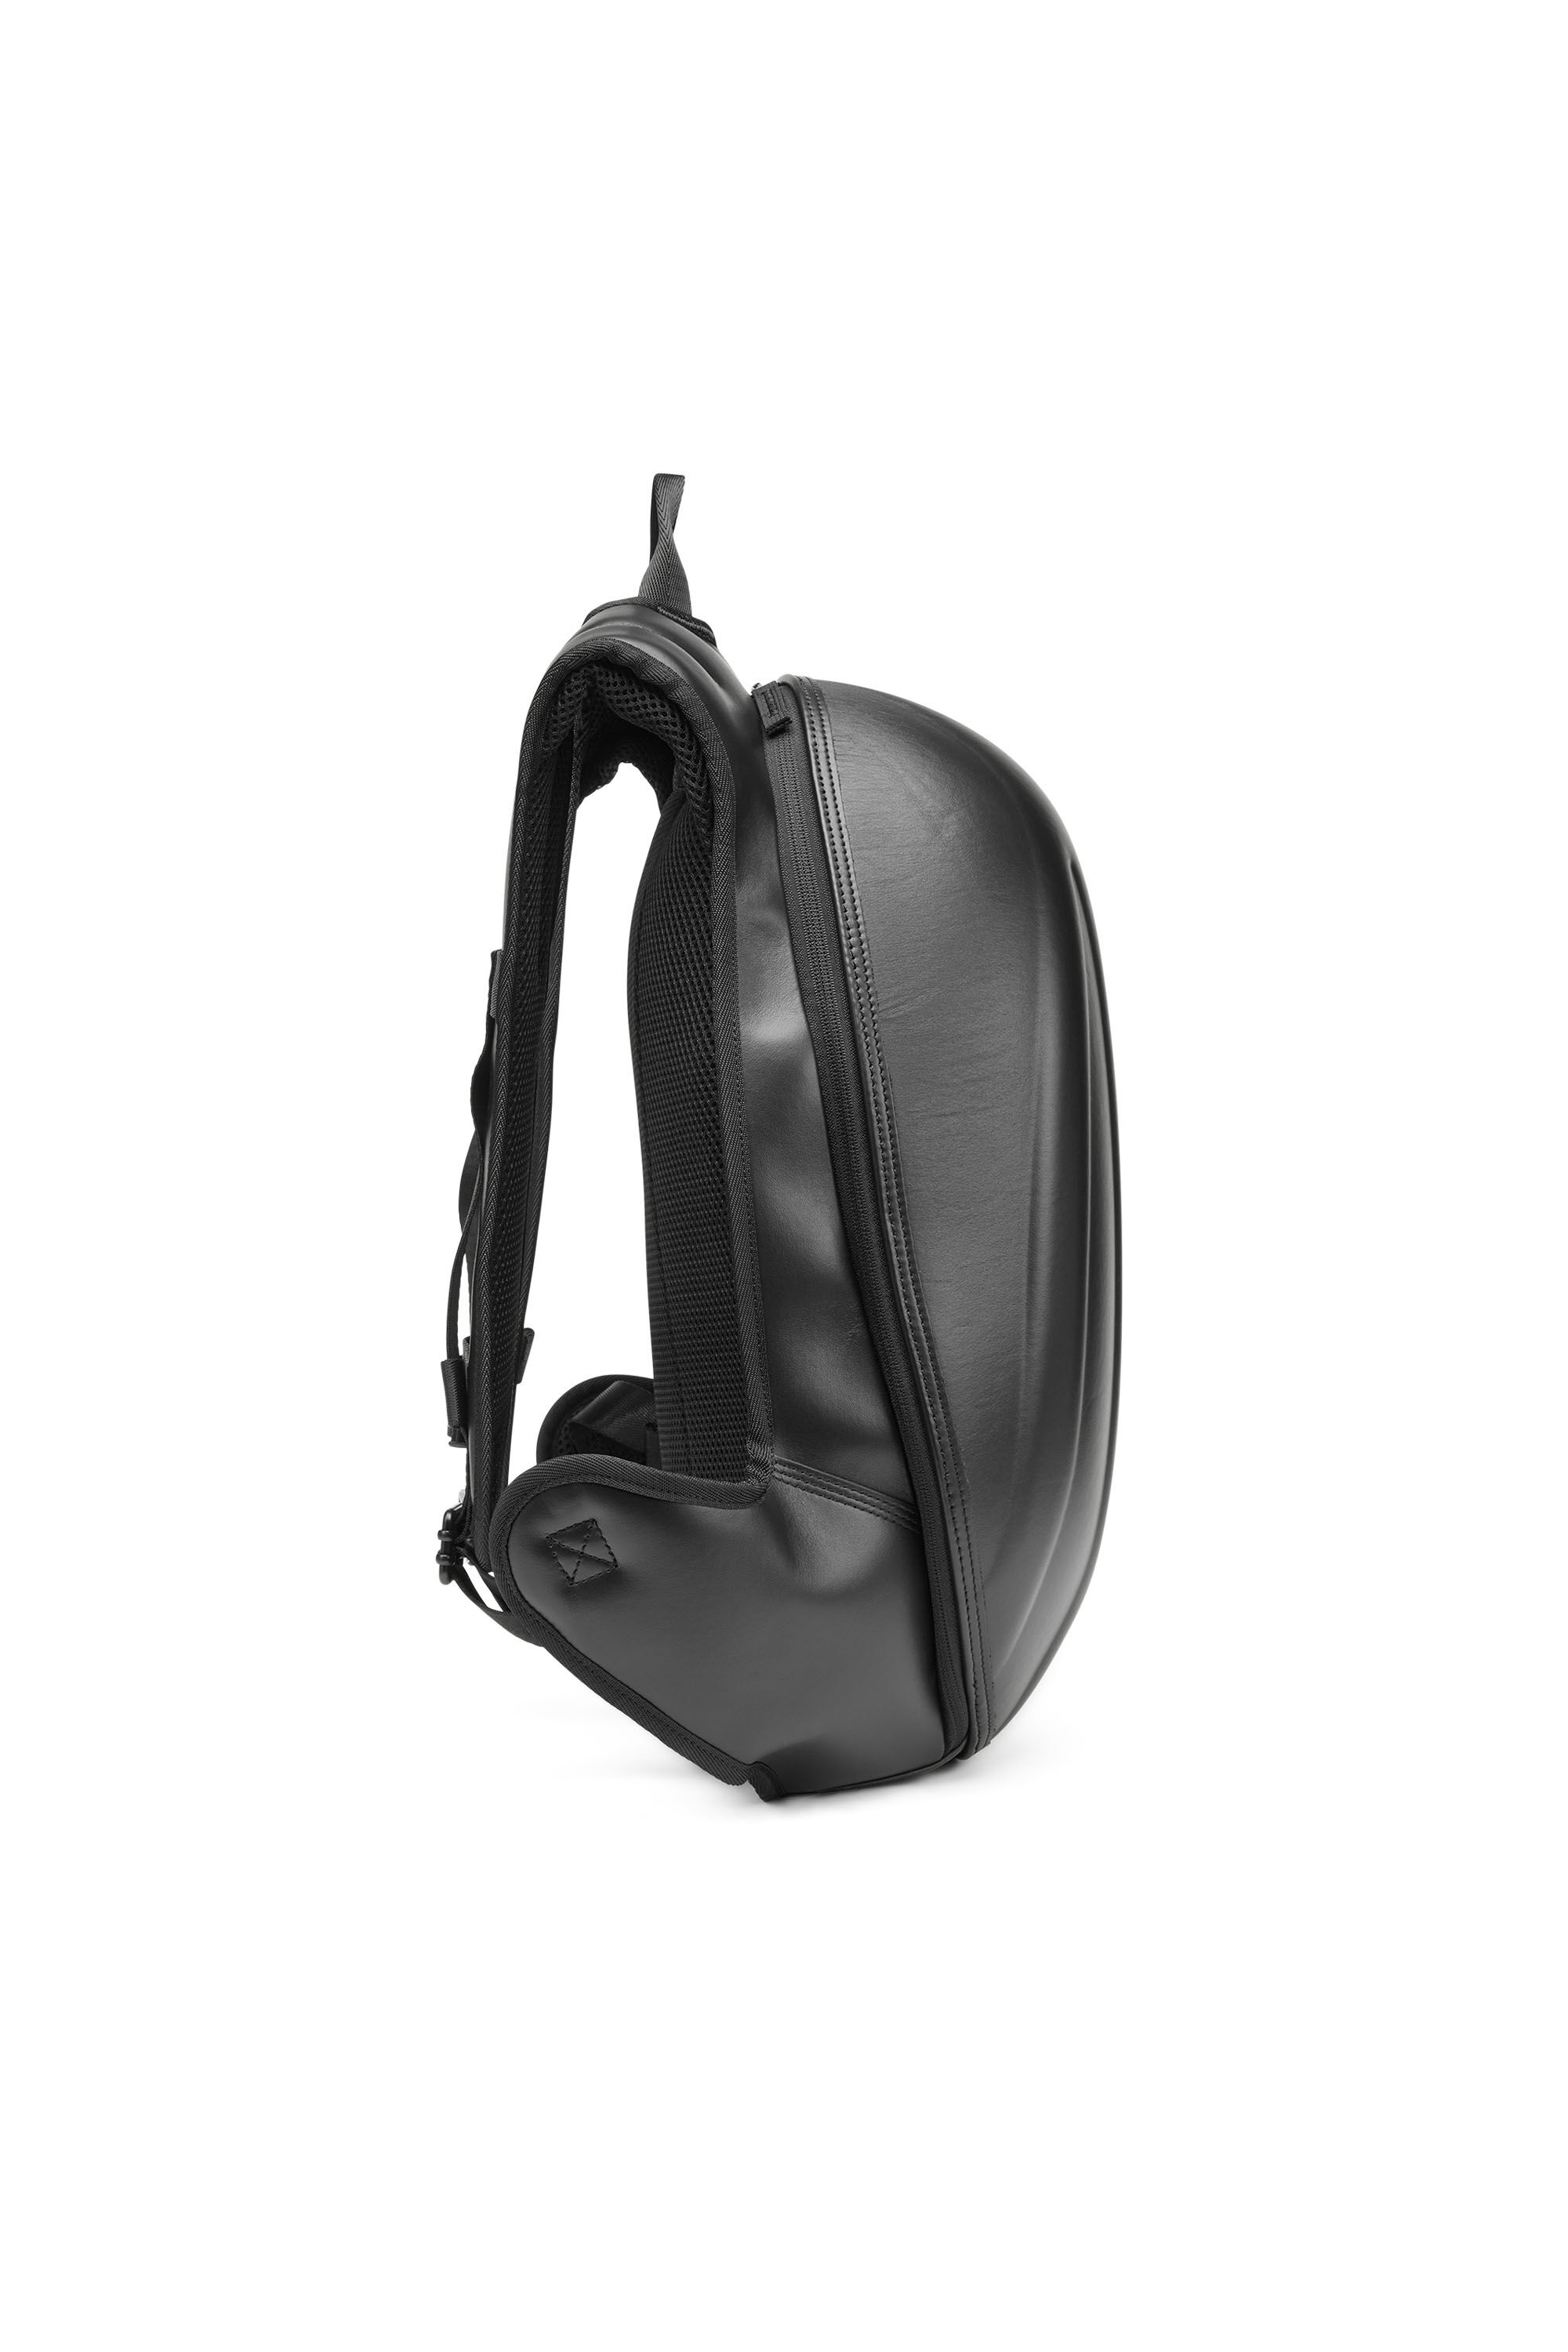 Diesel - 1DR-POD BACKPACK, Man 1DR-Pod Backpack - Hard shell leather backpack in Black - Image 4